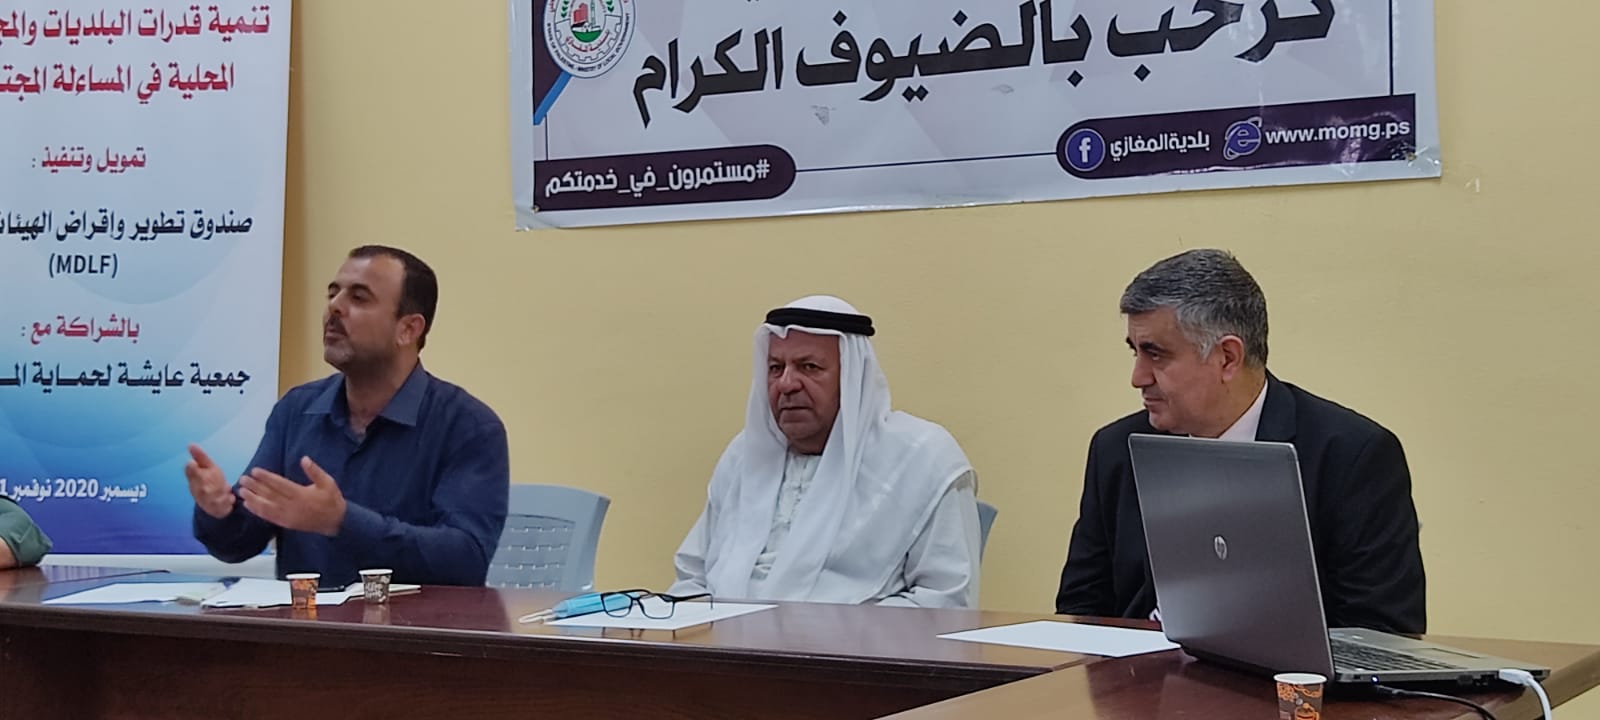 بلدية المغازي ولجنه المسألة المجتمعية توقع اتفاقية بإشراف جمعية عائشة